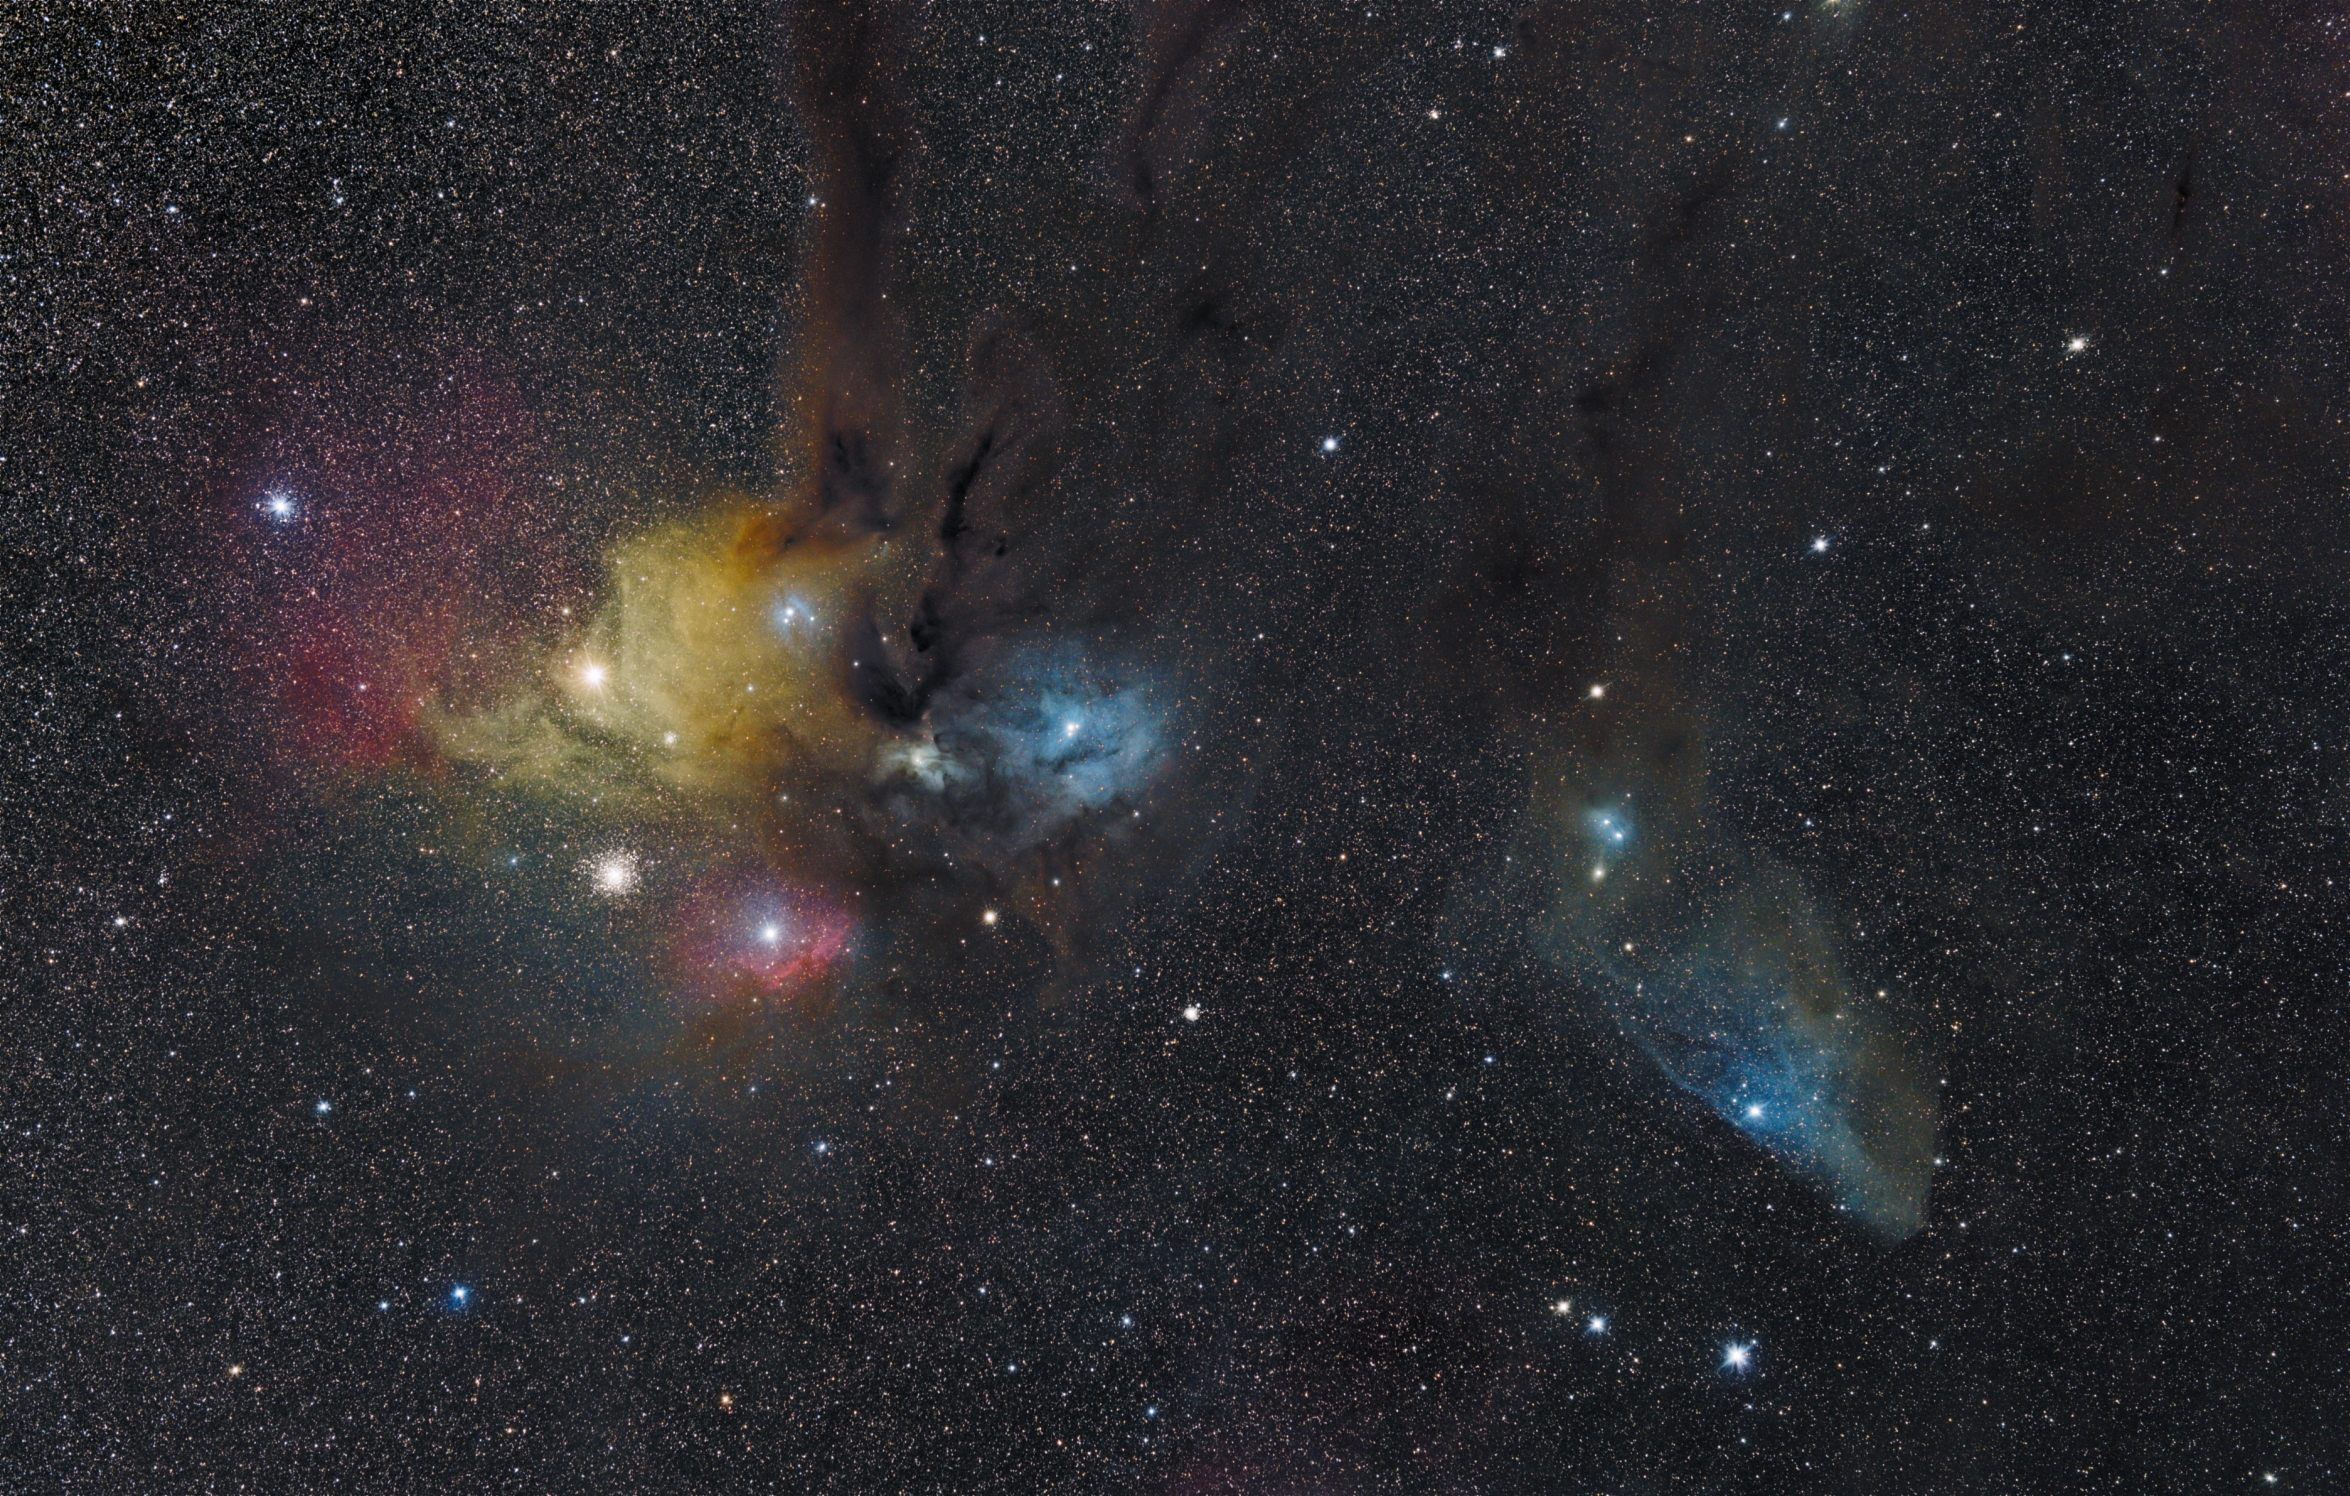 Az Antares-régió, a Kék Lófej-köd és a Rho Ophiuchi fotografikus észlelése -VCSE - Ágoston Zsolt